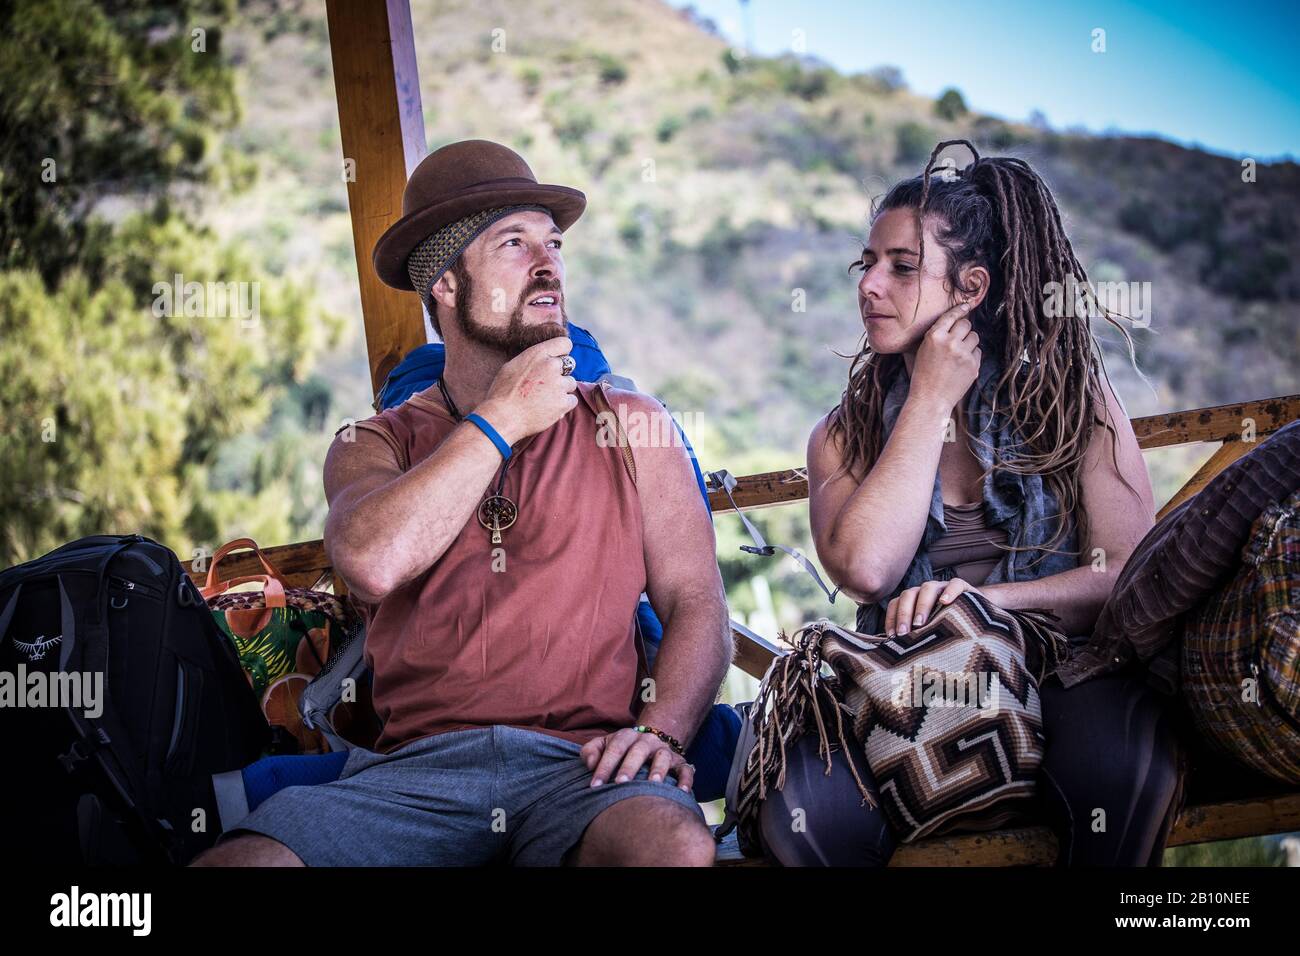 Hippies at San Marcos la laguna - Guatemala Stock Photo